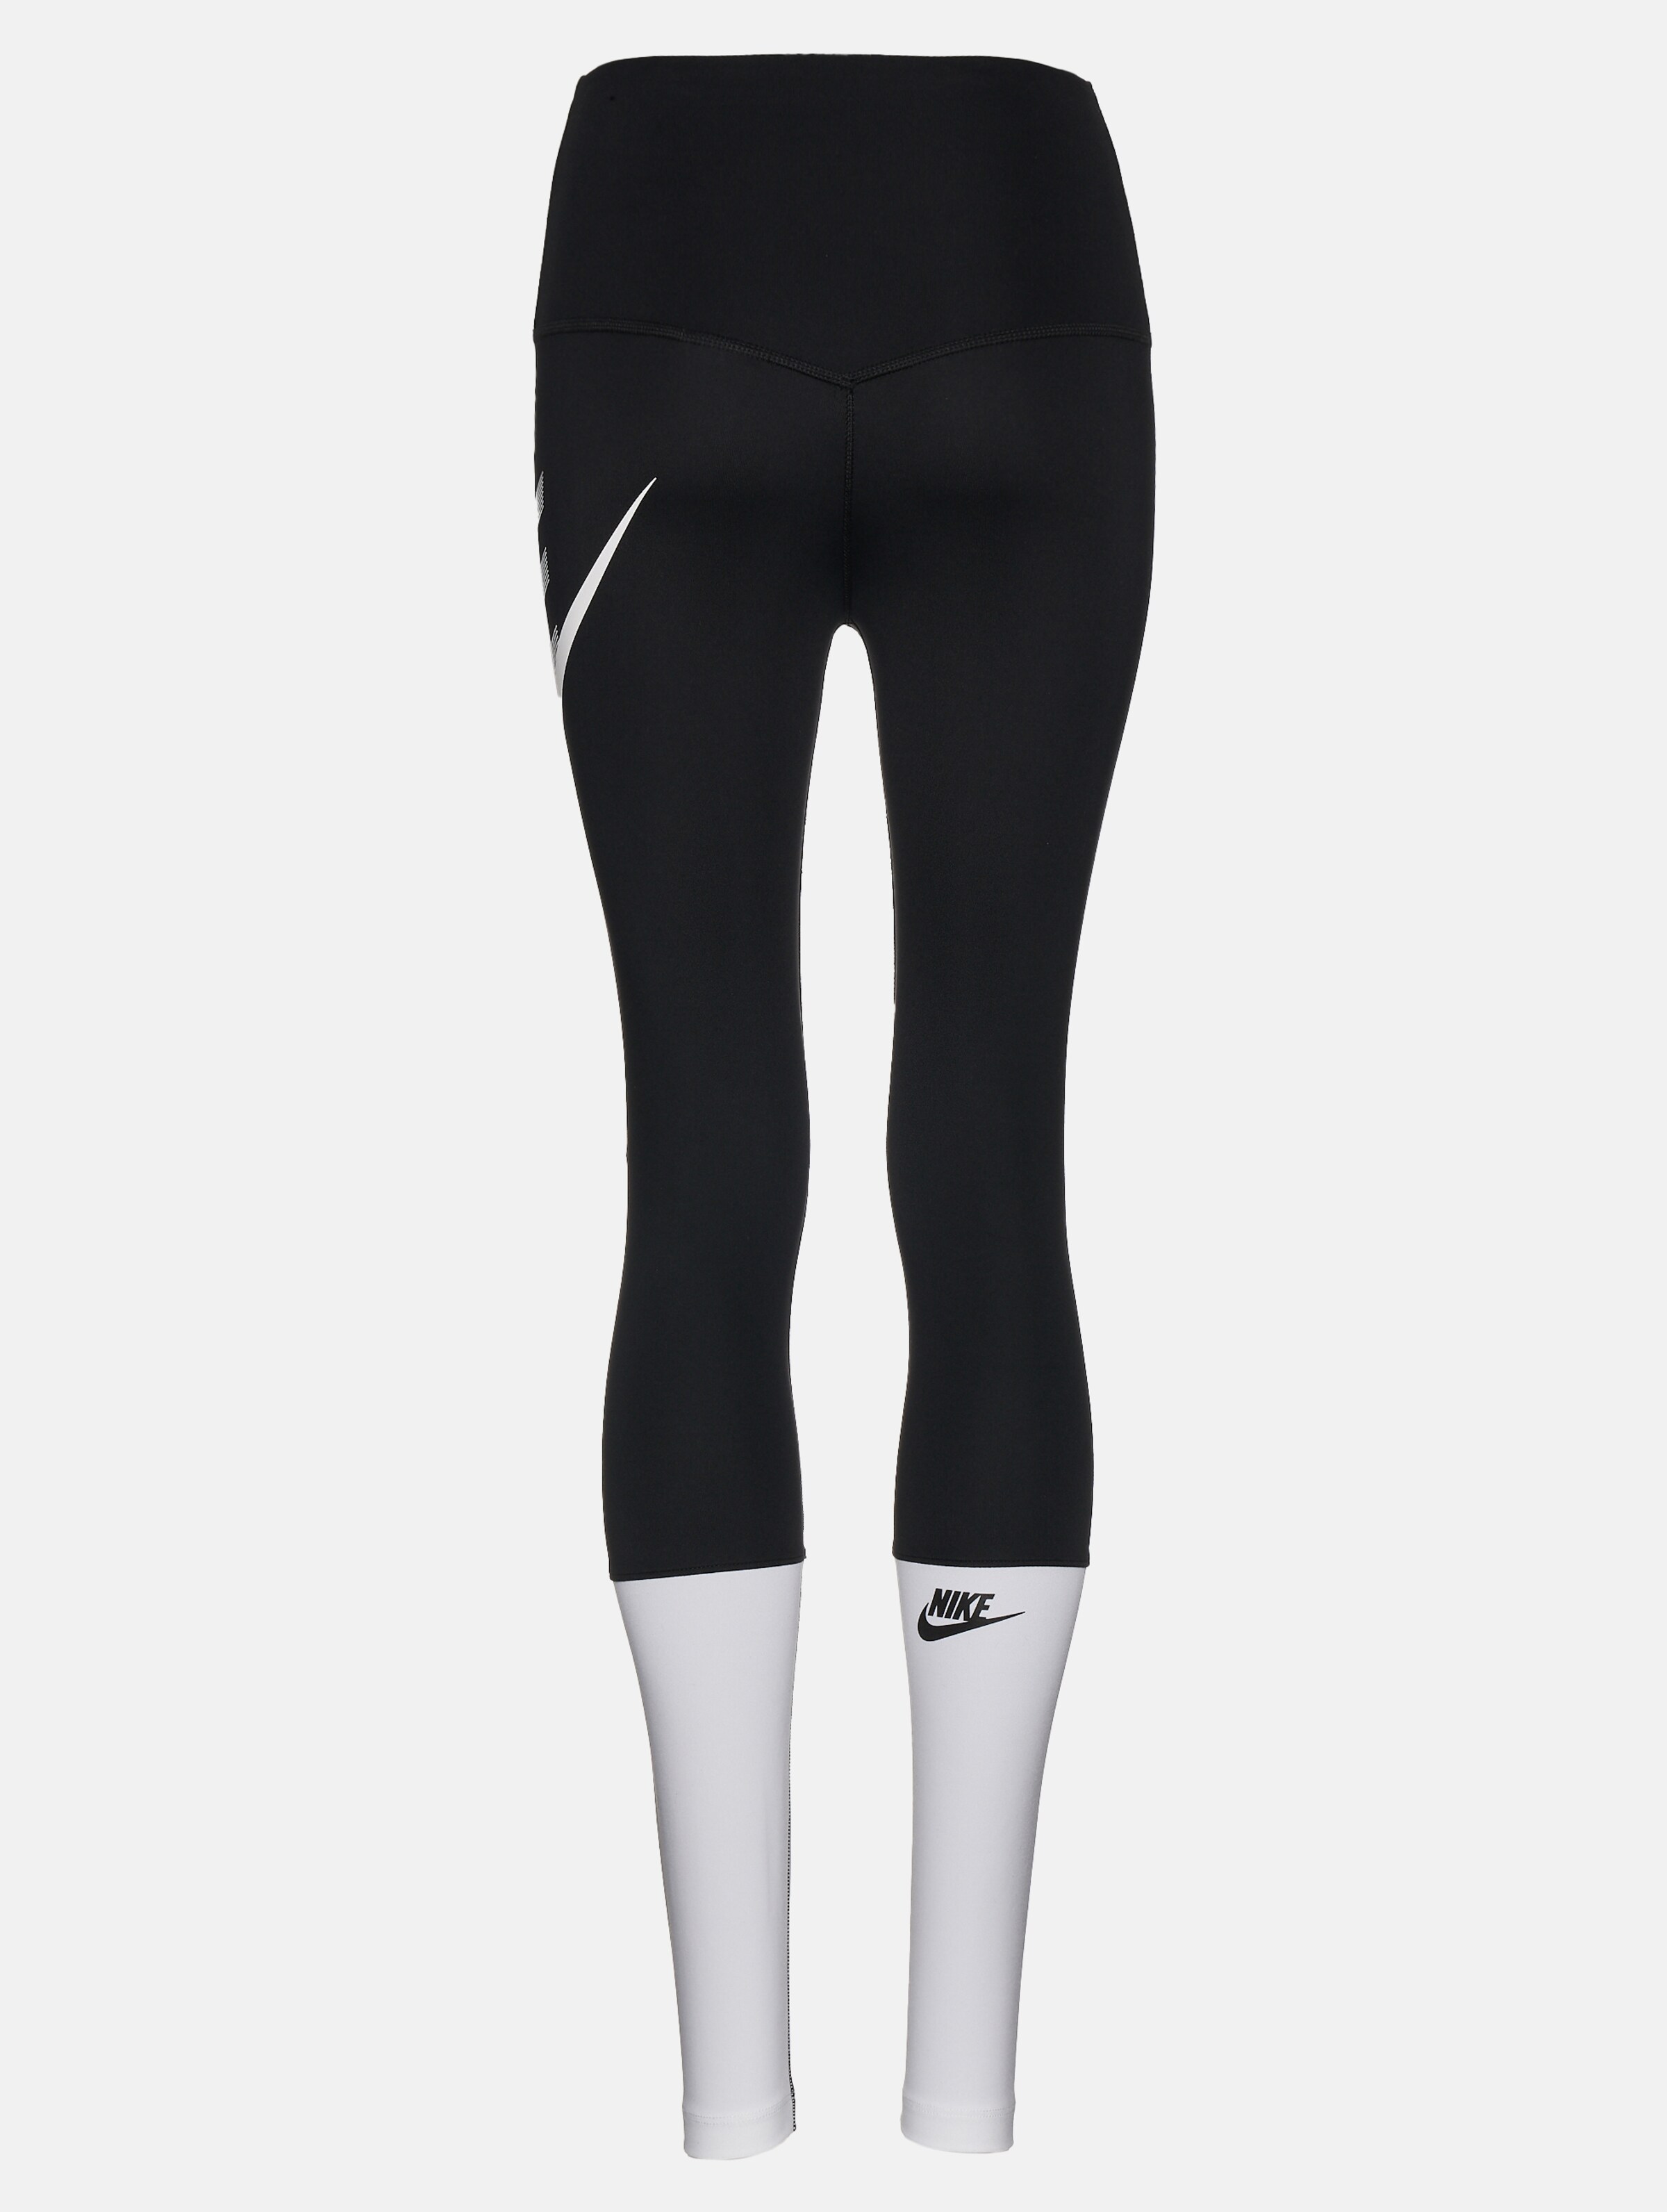 Details 251+ black and white leggings nike latest